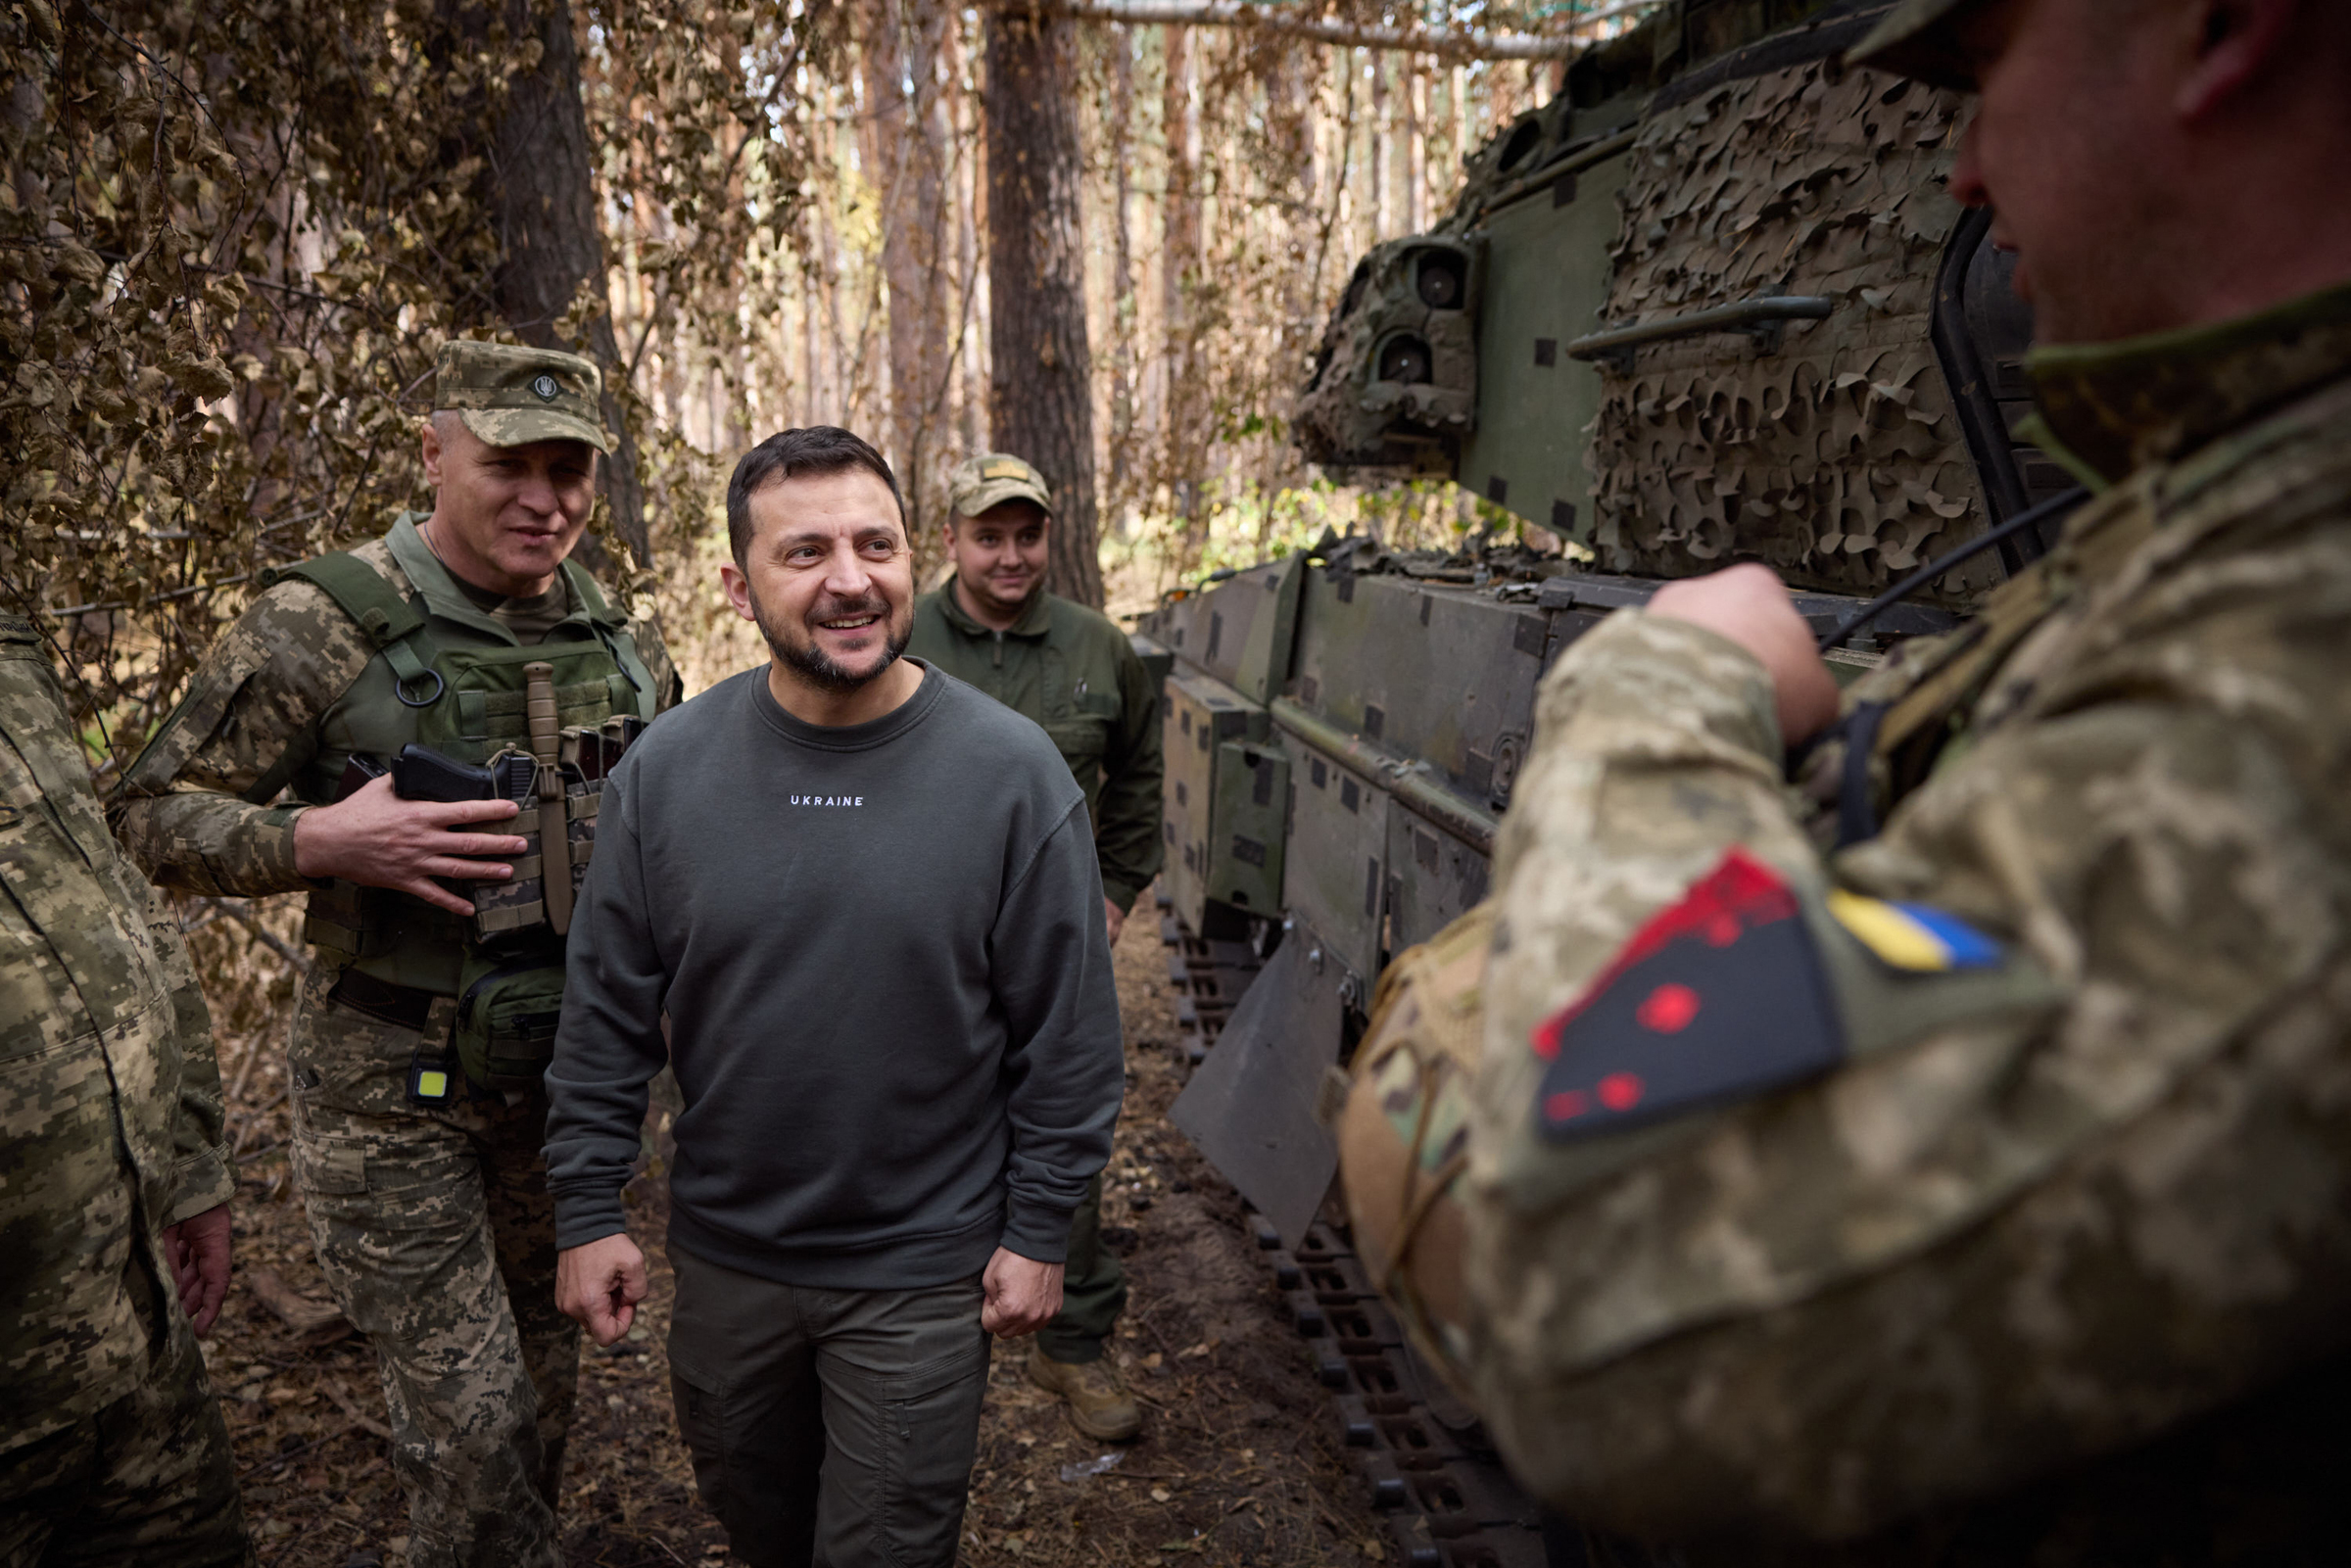 Tổng thống Volodymyr Zelensky thăm các lữ đoàn Ukraine đang chiến đấu ở mặt trận Kupyansk - Lyman, tỉnh miền đông Kharkov. Ảnh: AFP